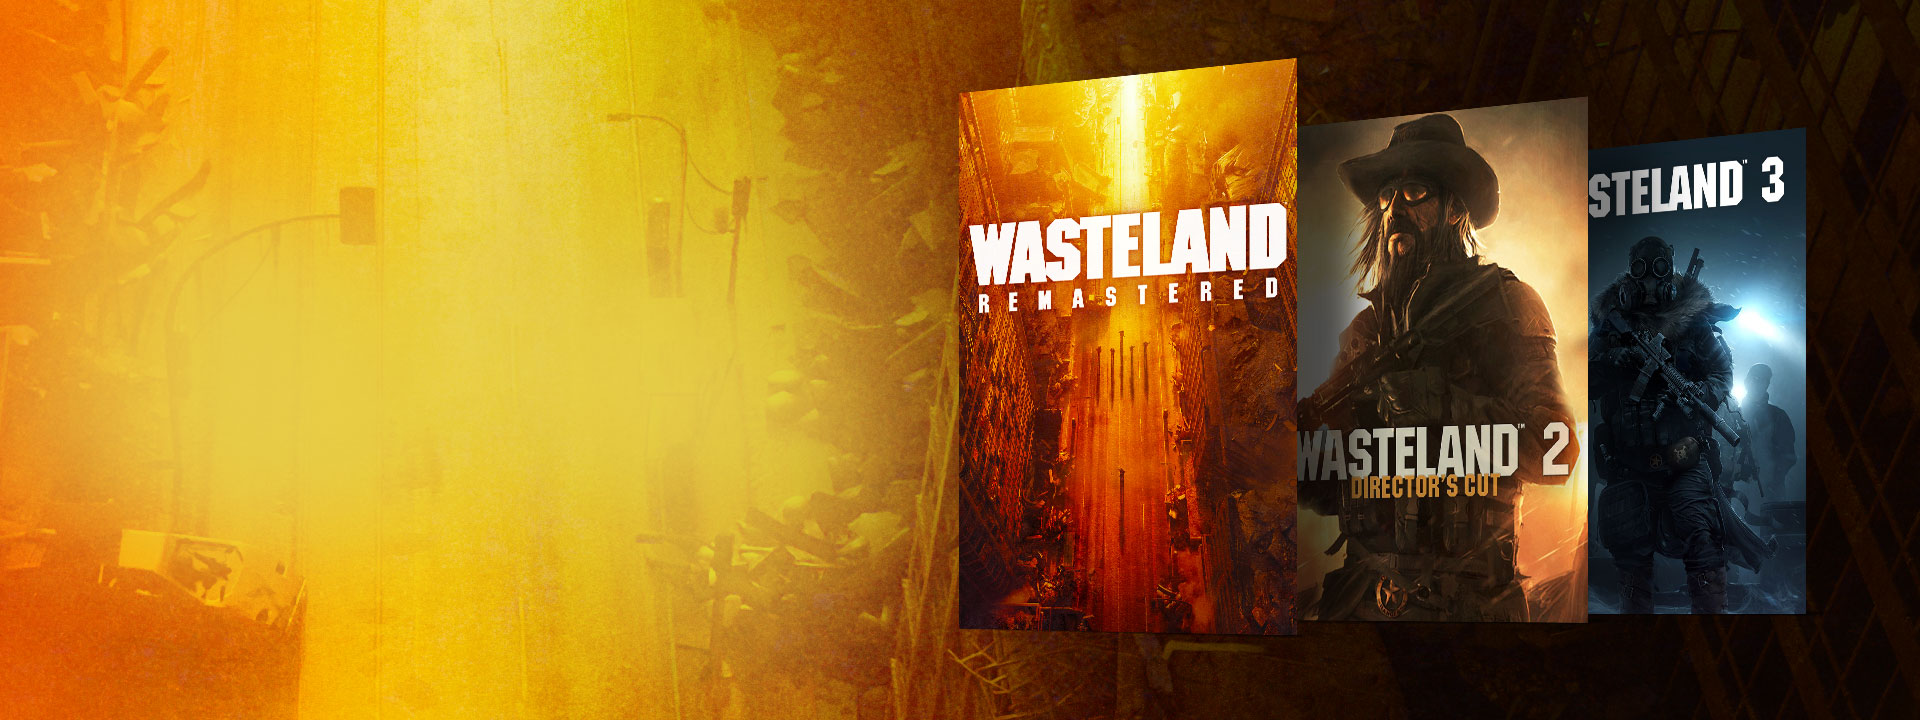 Immagini delle confezioni di Wasteland Remastered, Wasteland 2 Director's Cut e Wasteland 3. Sfondo con una strada abbandonata e sfumature gialle e arancioni